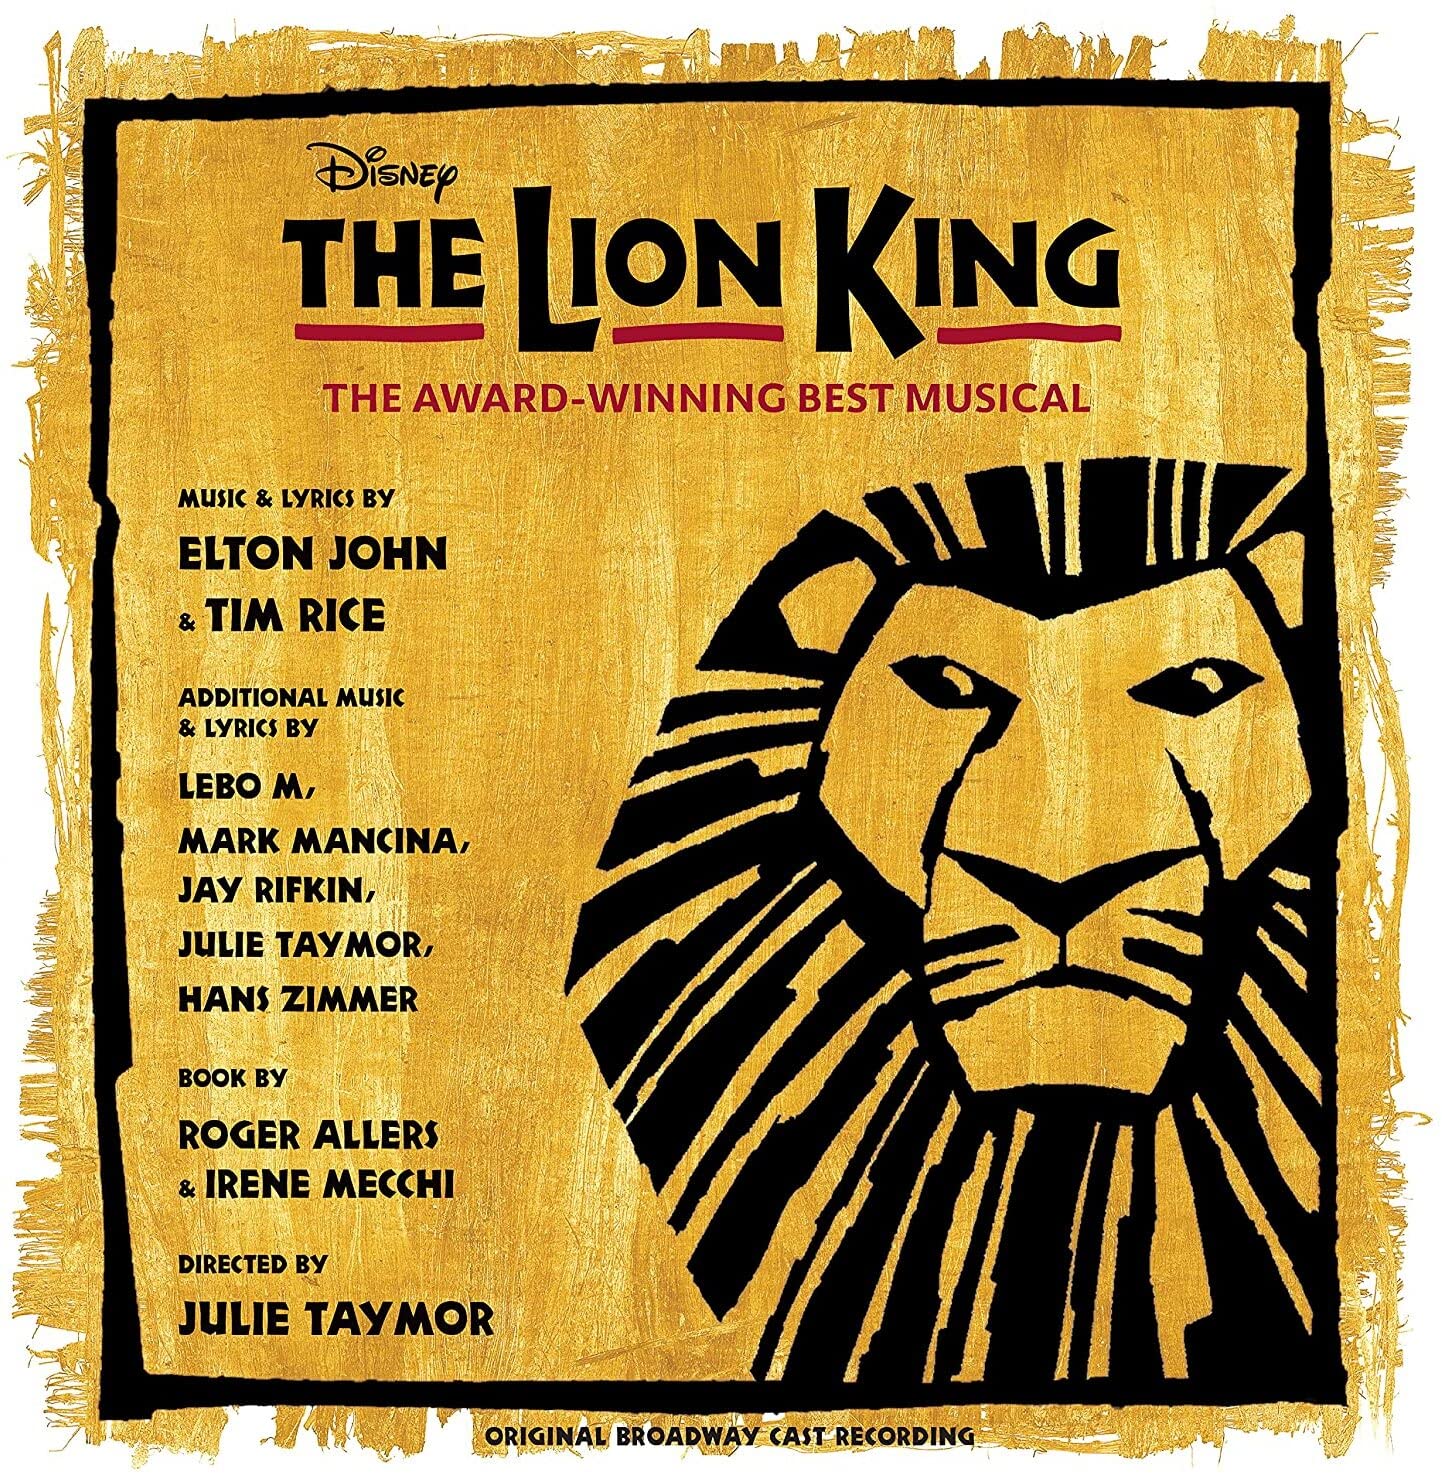 Vinile Elton John / Tim Rice - The Lion King (Original Broadway Cast Recording) (Gold and Black Splatter Vinyl) (2 Lp) NUOVO SIGILLATO, EDIZIONE DEL 17/12/2022 SUBITO DISPONIBILE